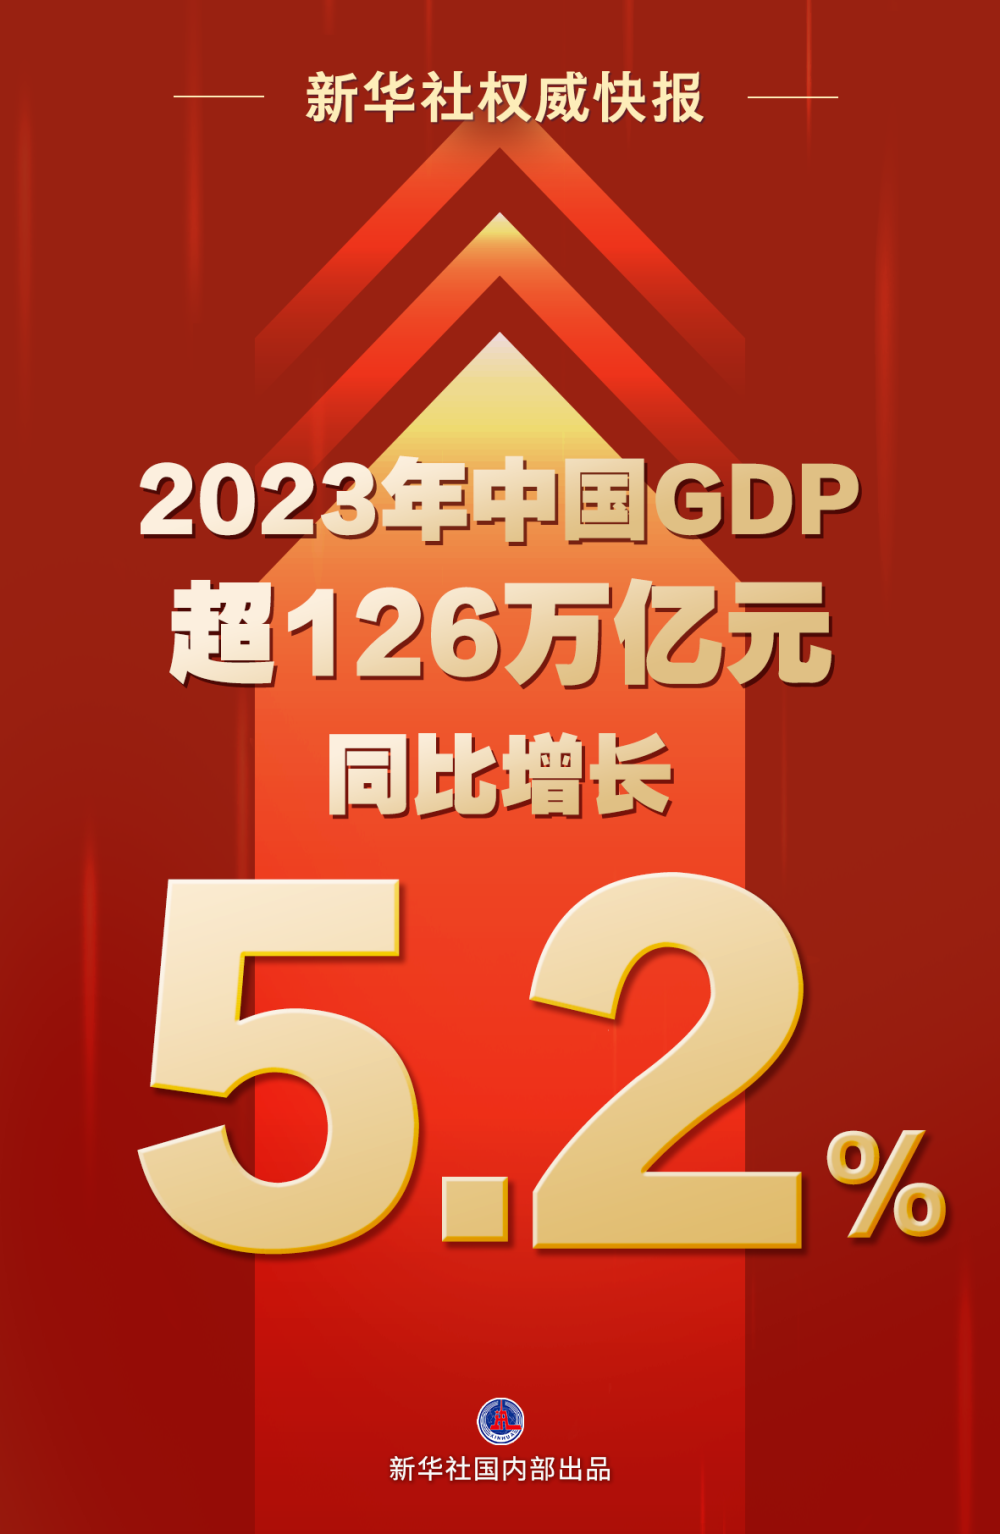 2023年中国GDP1260582亿元，比2022年增长5.2%！